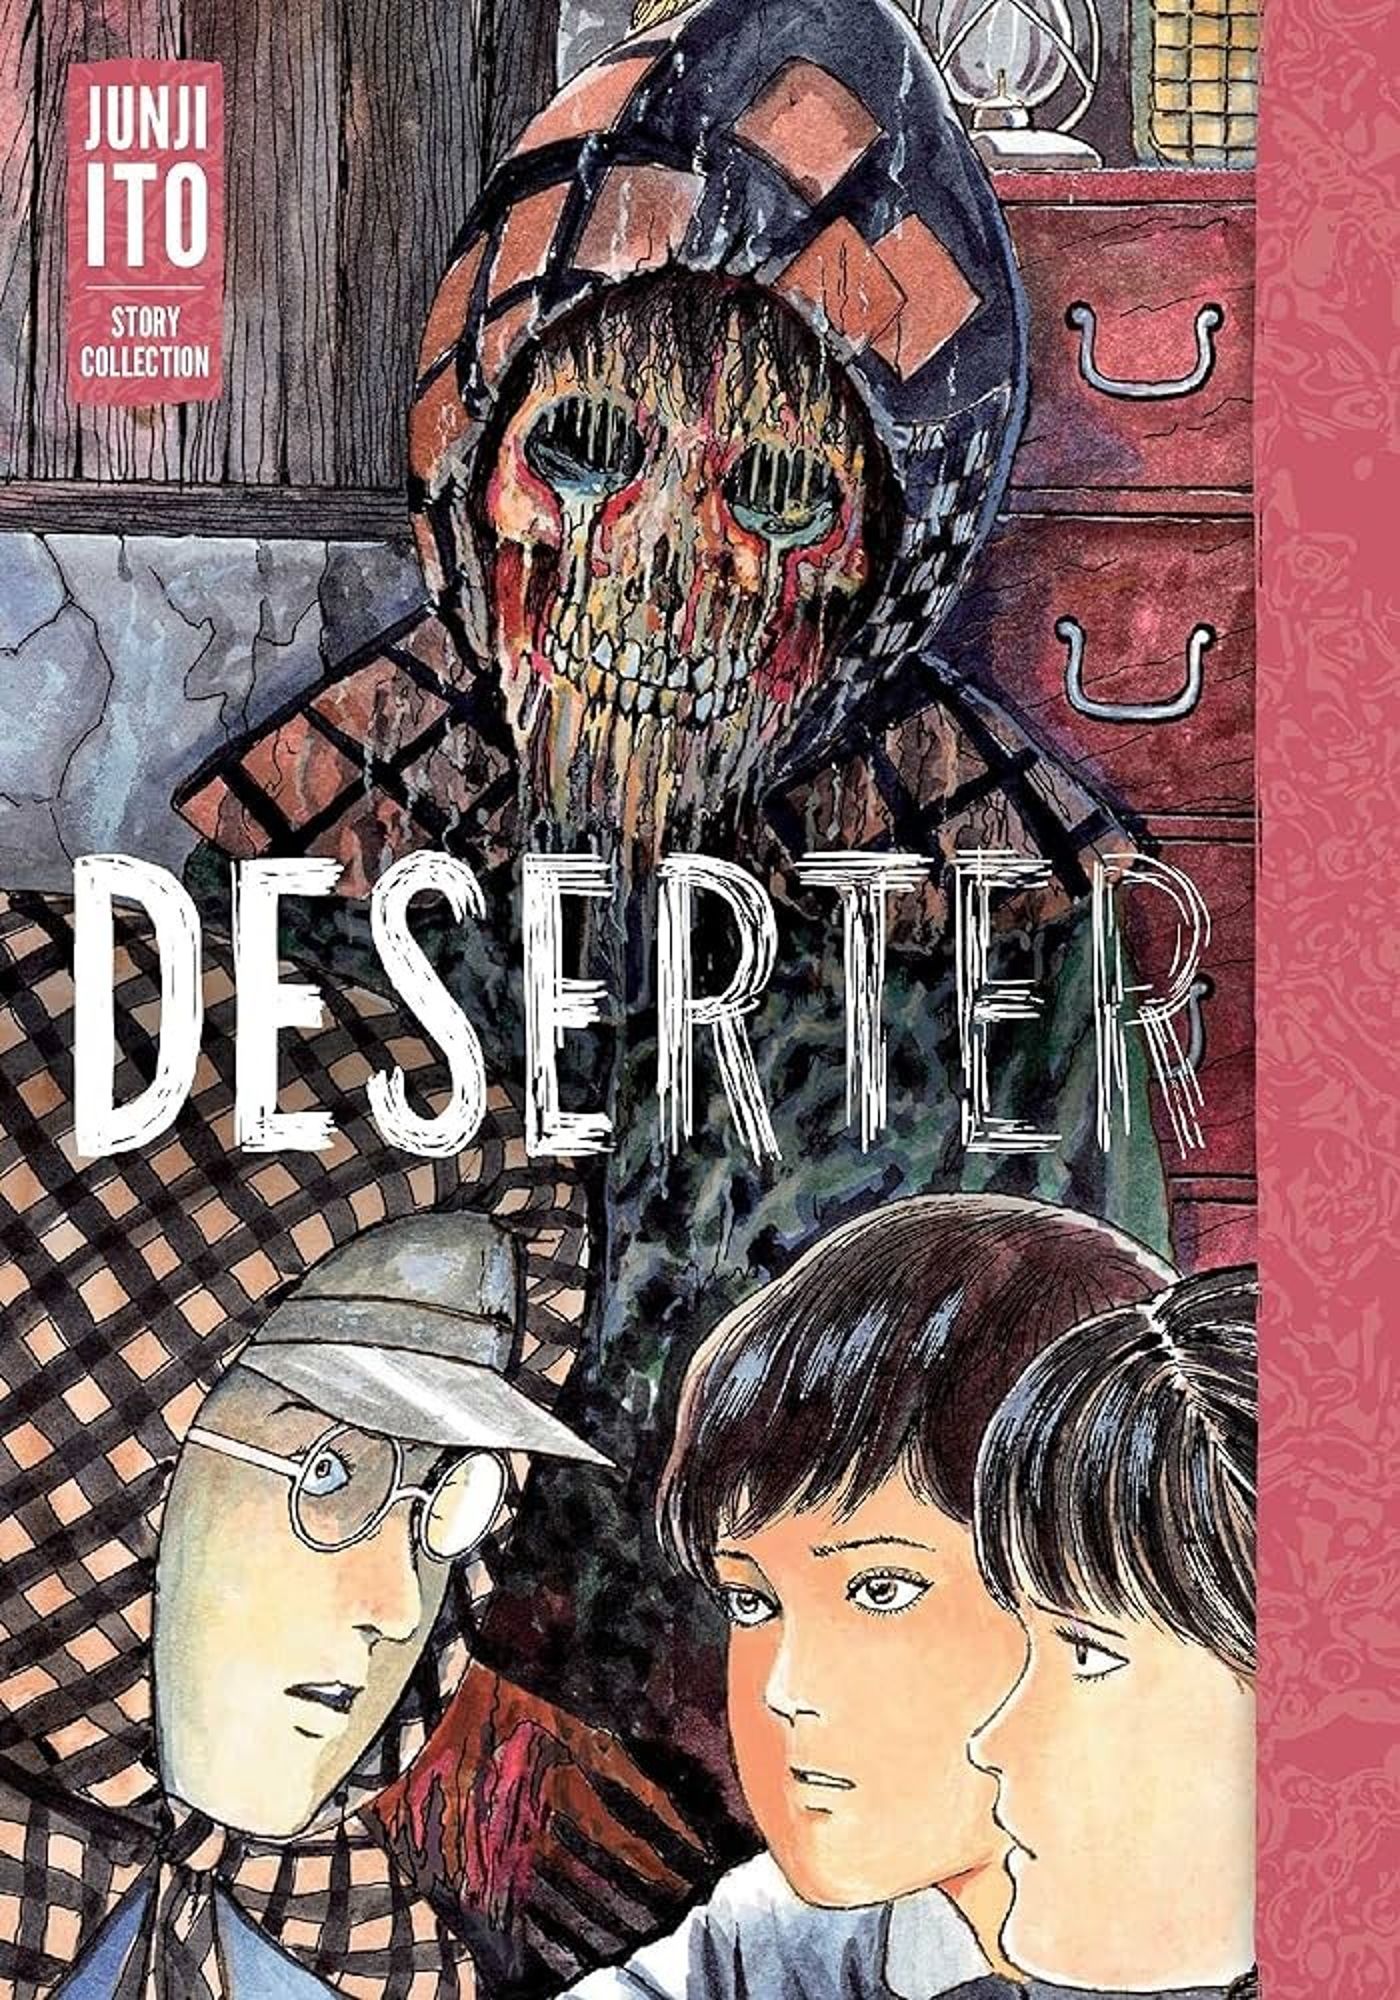 Arte da capa de Deserter apresentando um cadáver derretido